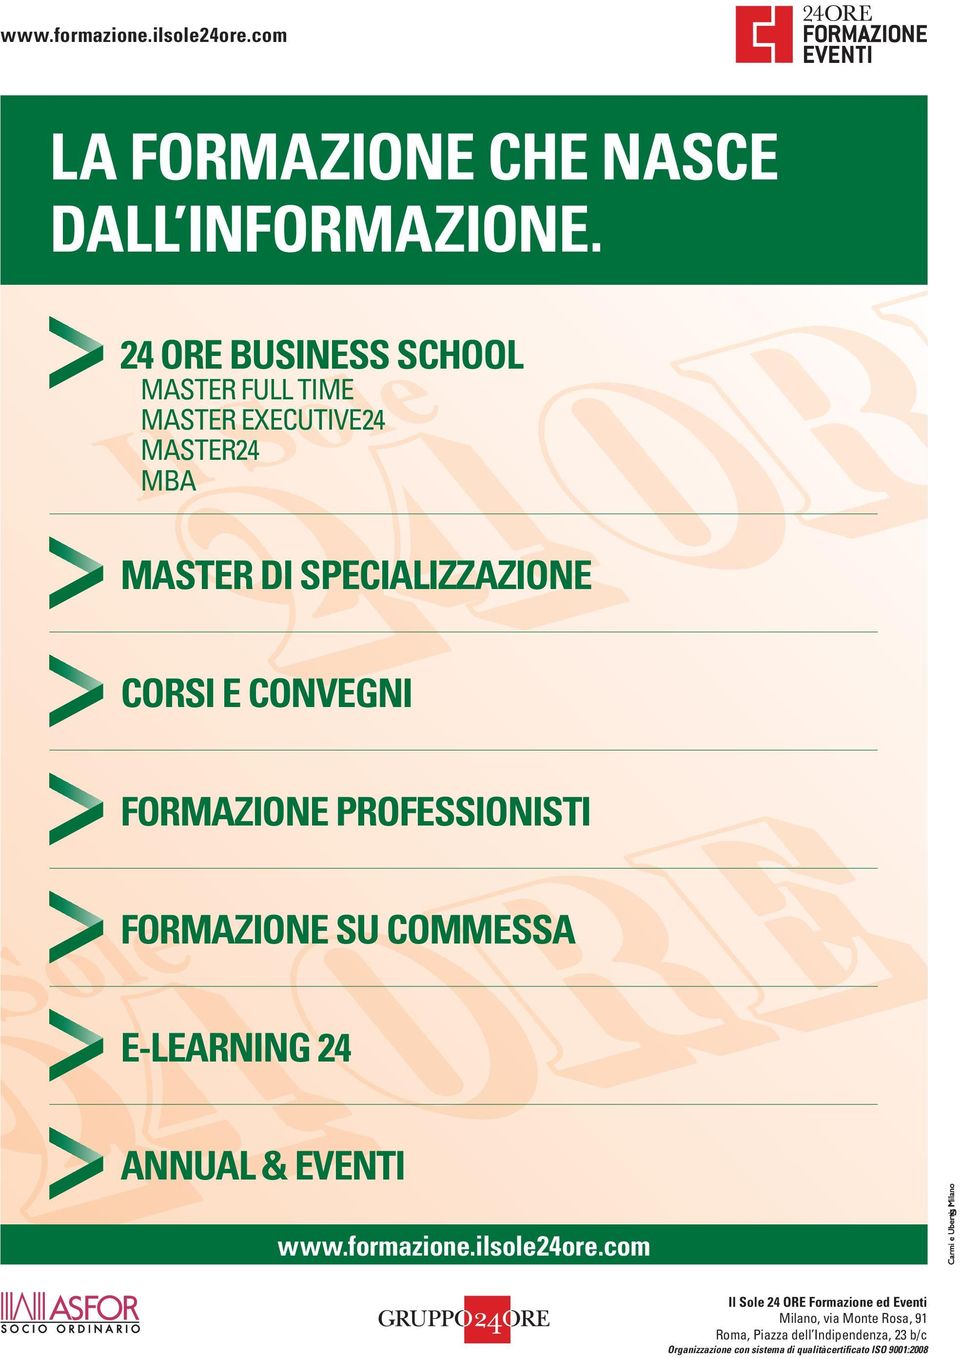 FORMAZIONE PROFESSIONISTI FORMAZIONE SU COMMESSA E-LEARNING 24 ANNUAL & EVENTI www.formazione.ilsole24ore.